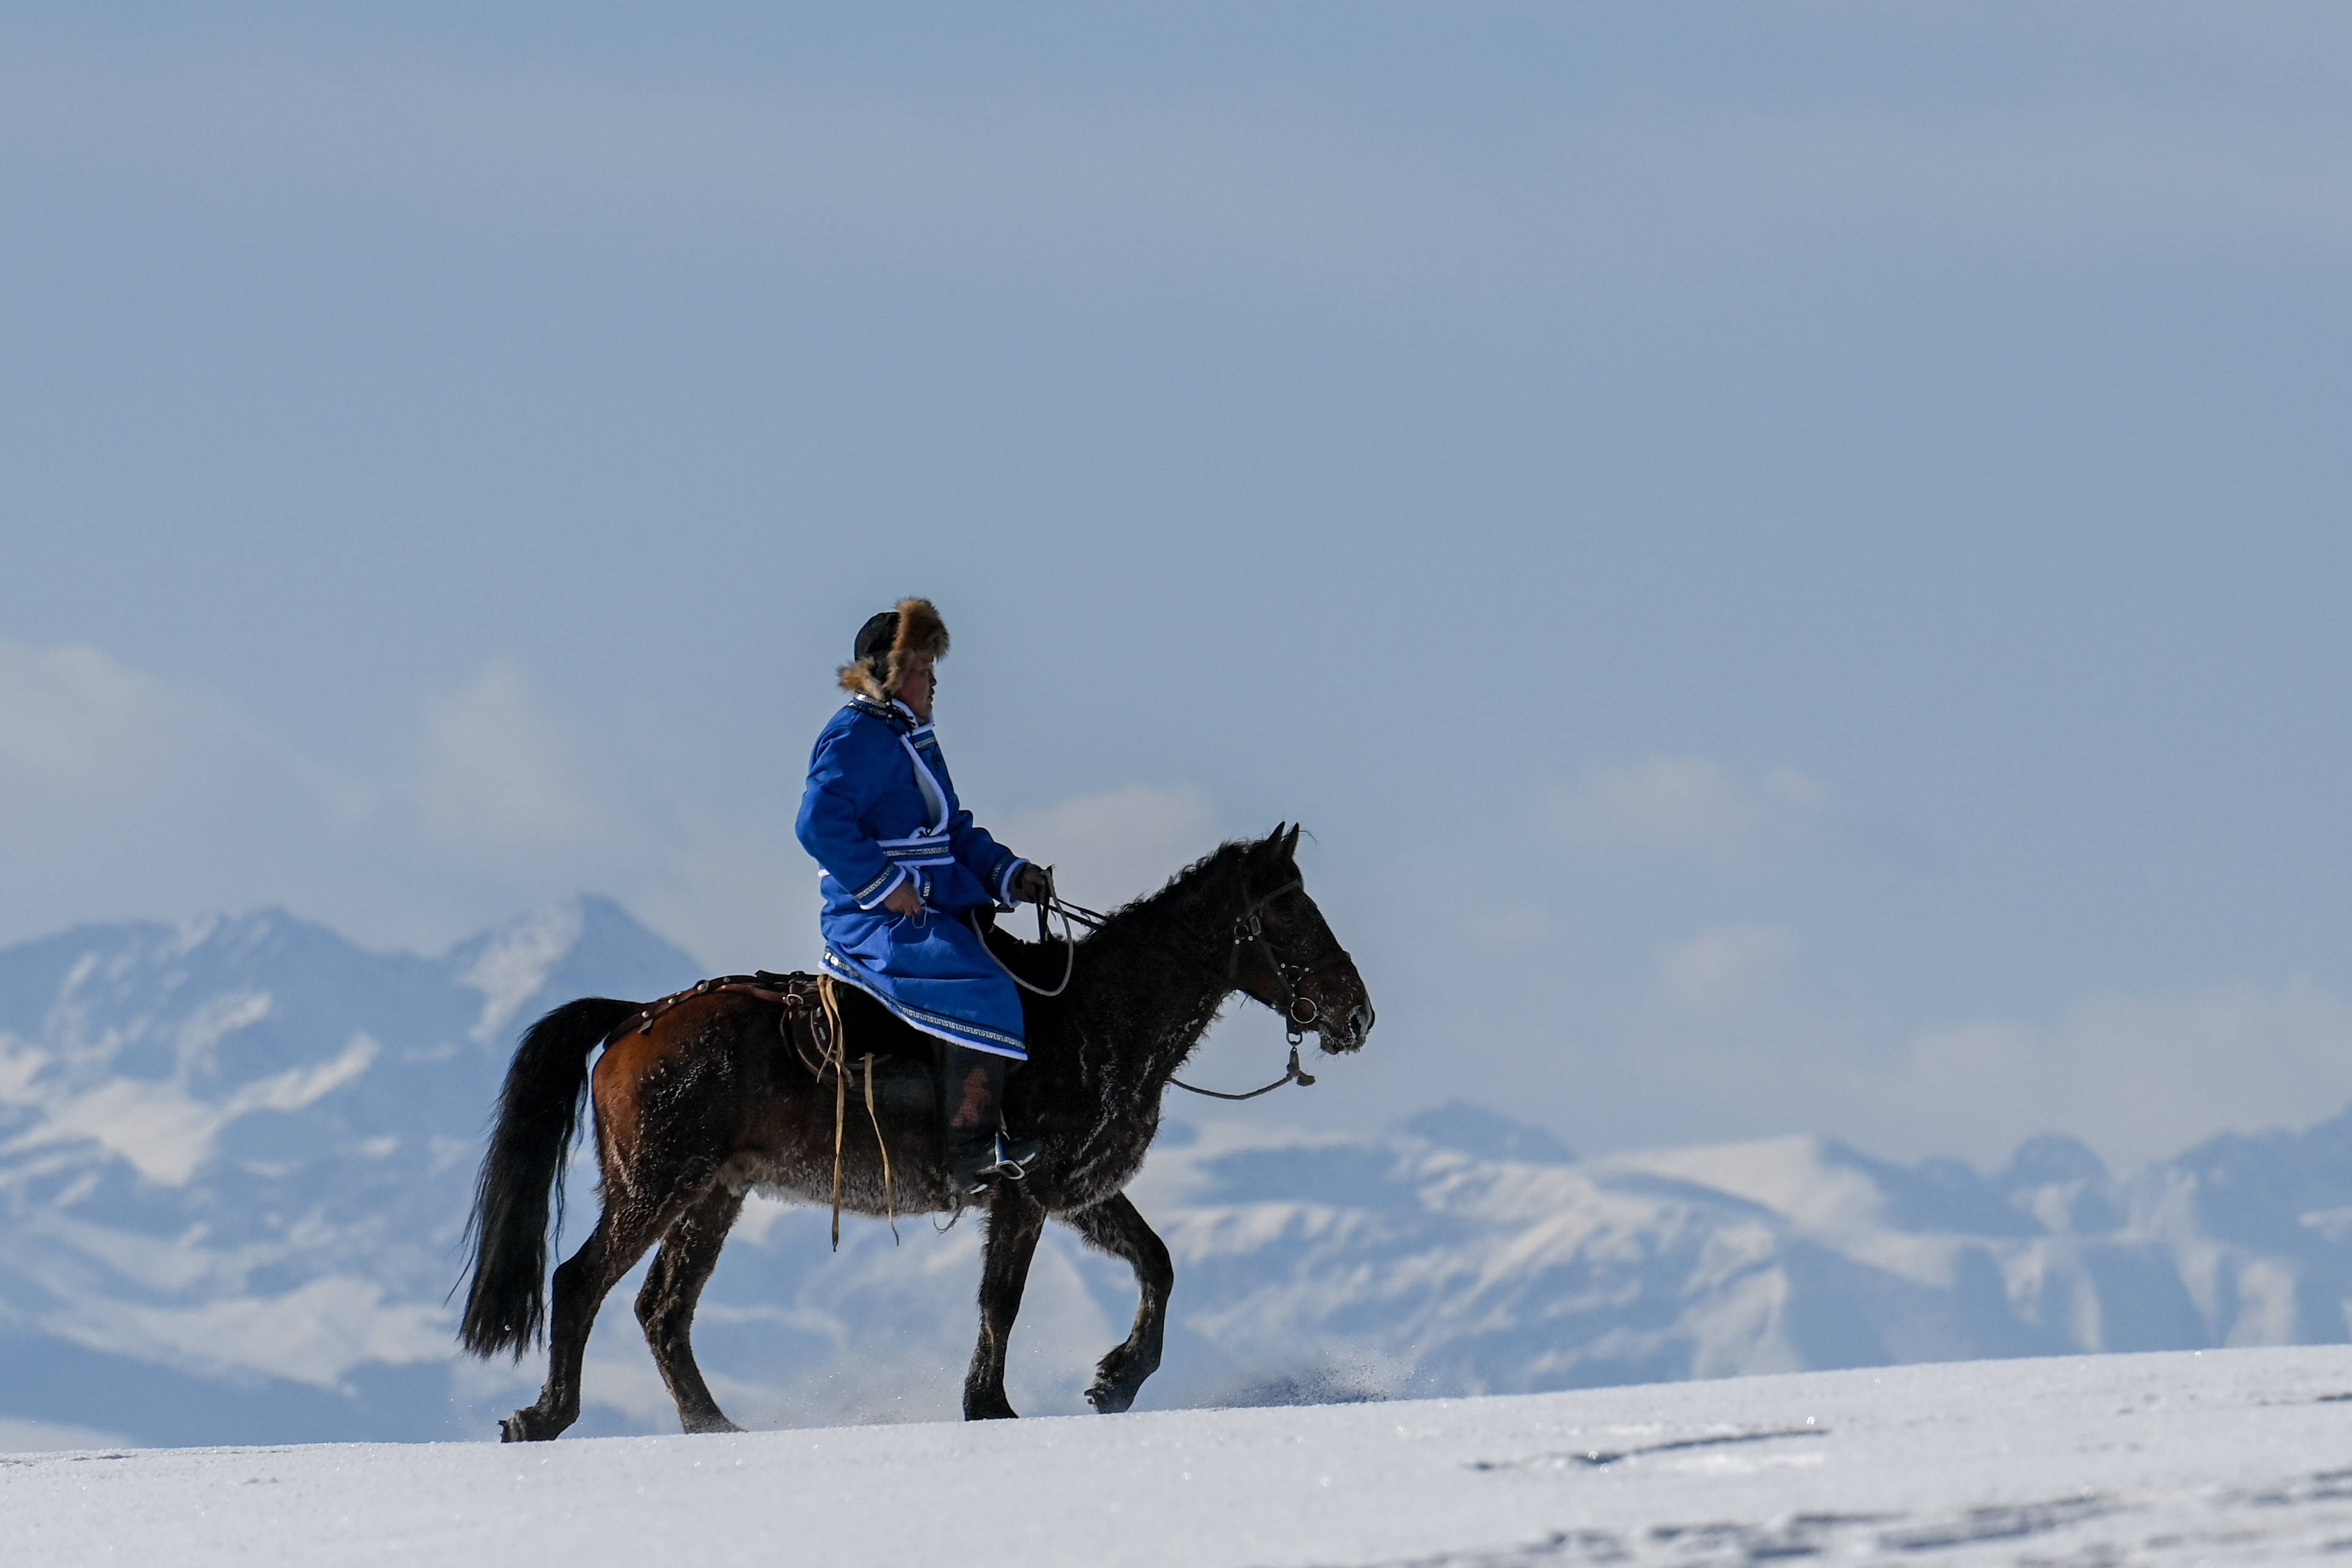 在新疆伊犁哈萨克自治州昭苏县,一位牧民骑马走在茫茫雪原中(2020年12